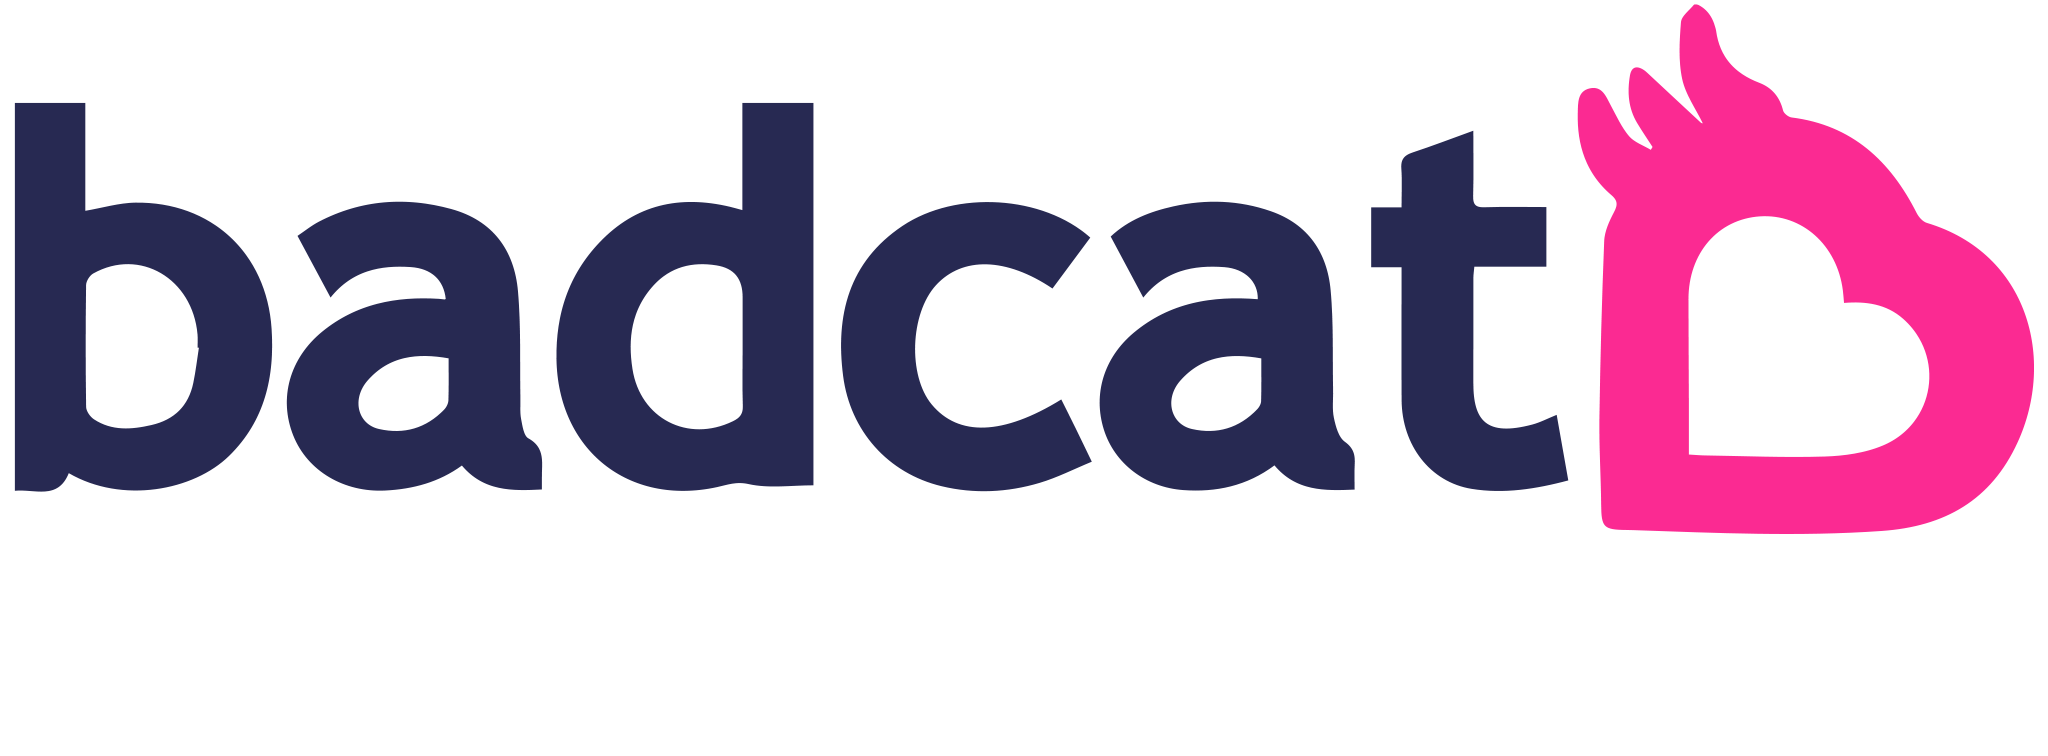 Sacola Badcat - Compre agora | Badcat Store